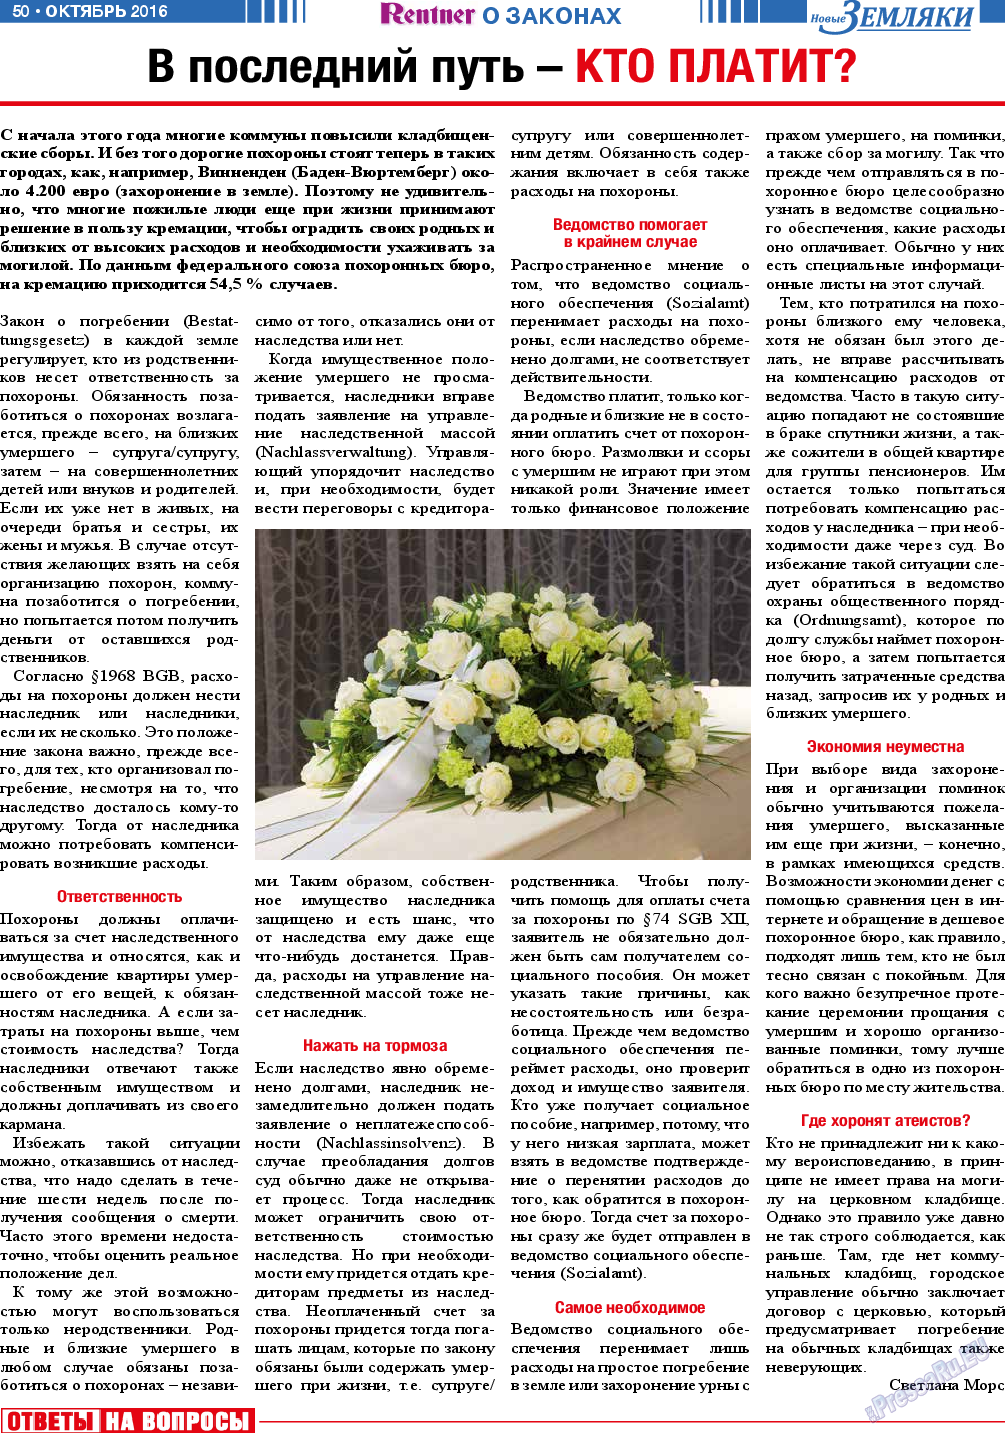 Новые Земляки (газета). 2016 год, номер 10, стр. 50